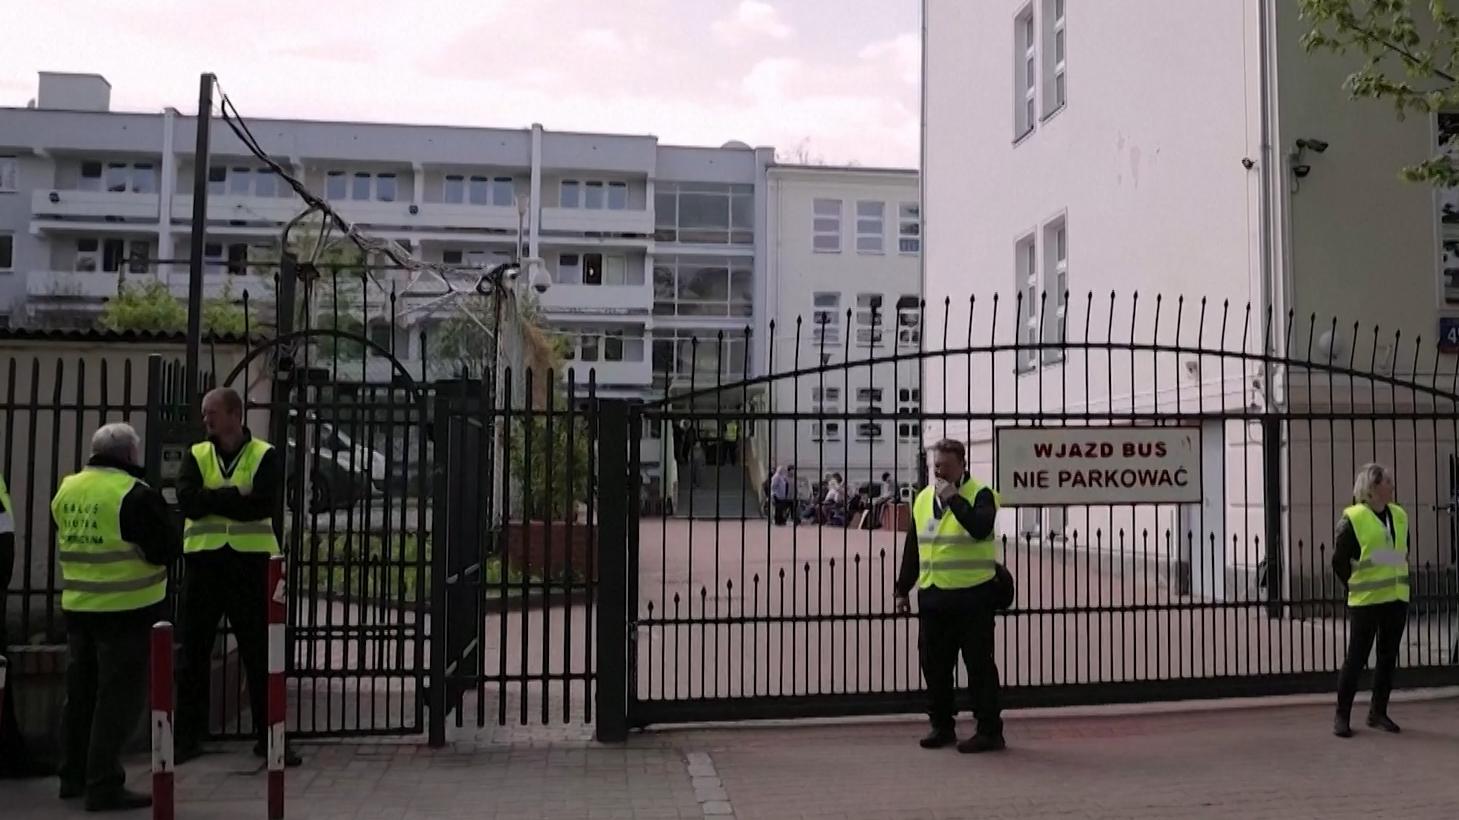 Посольство России в Польше направило протест в связи с «захватом школы»